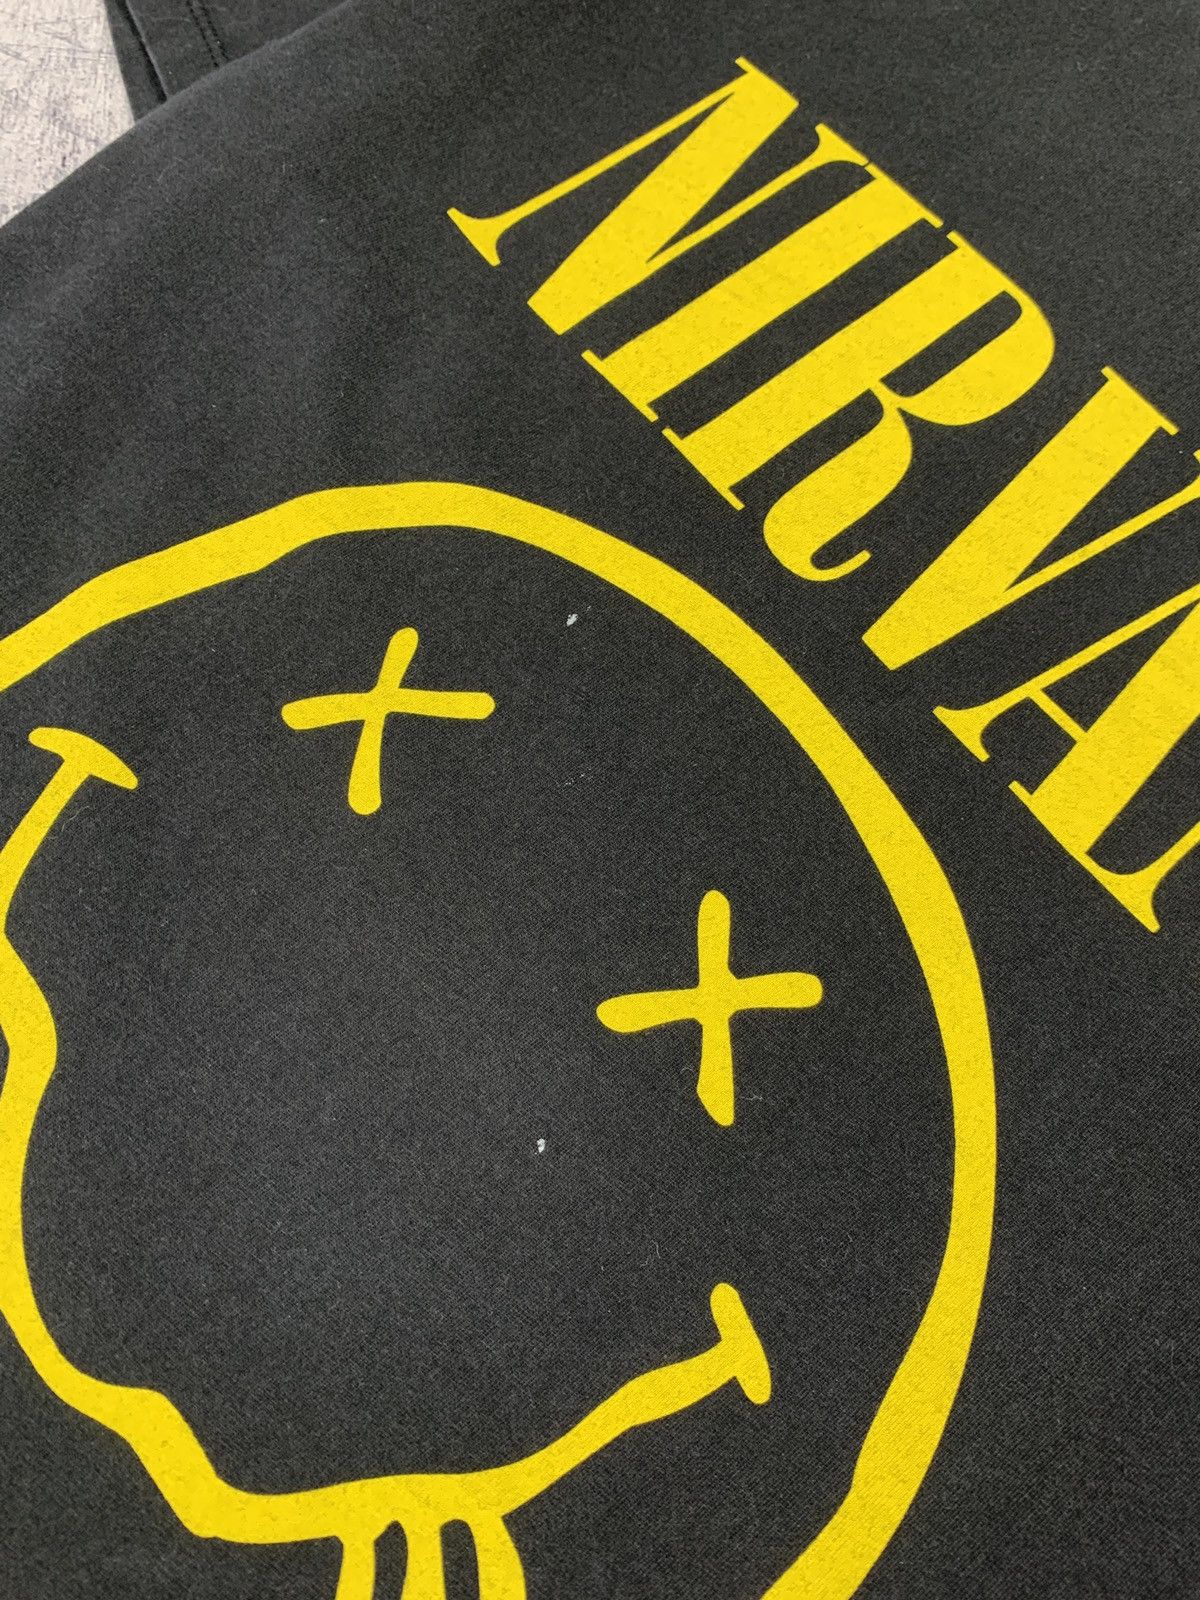 Nirvana Vintage Nirvana Smile Rock Band Tour Graphic Tee Size US M / EU 48-50 / 2 - 6 Thumbnail